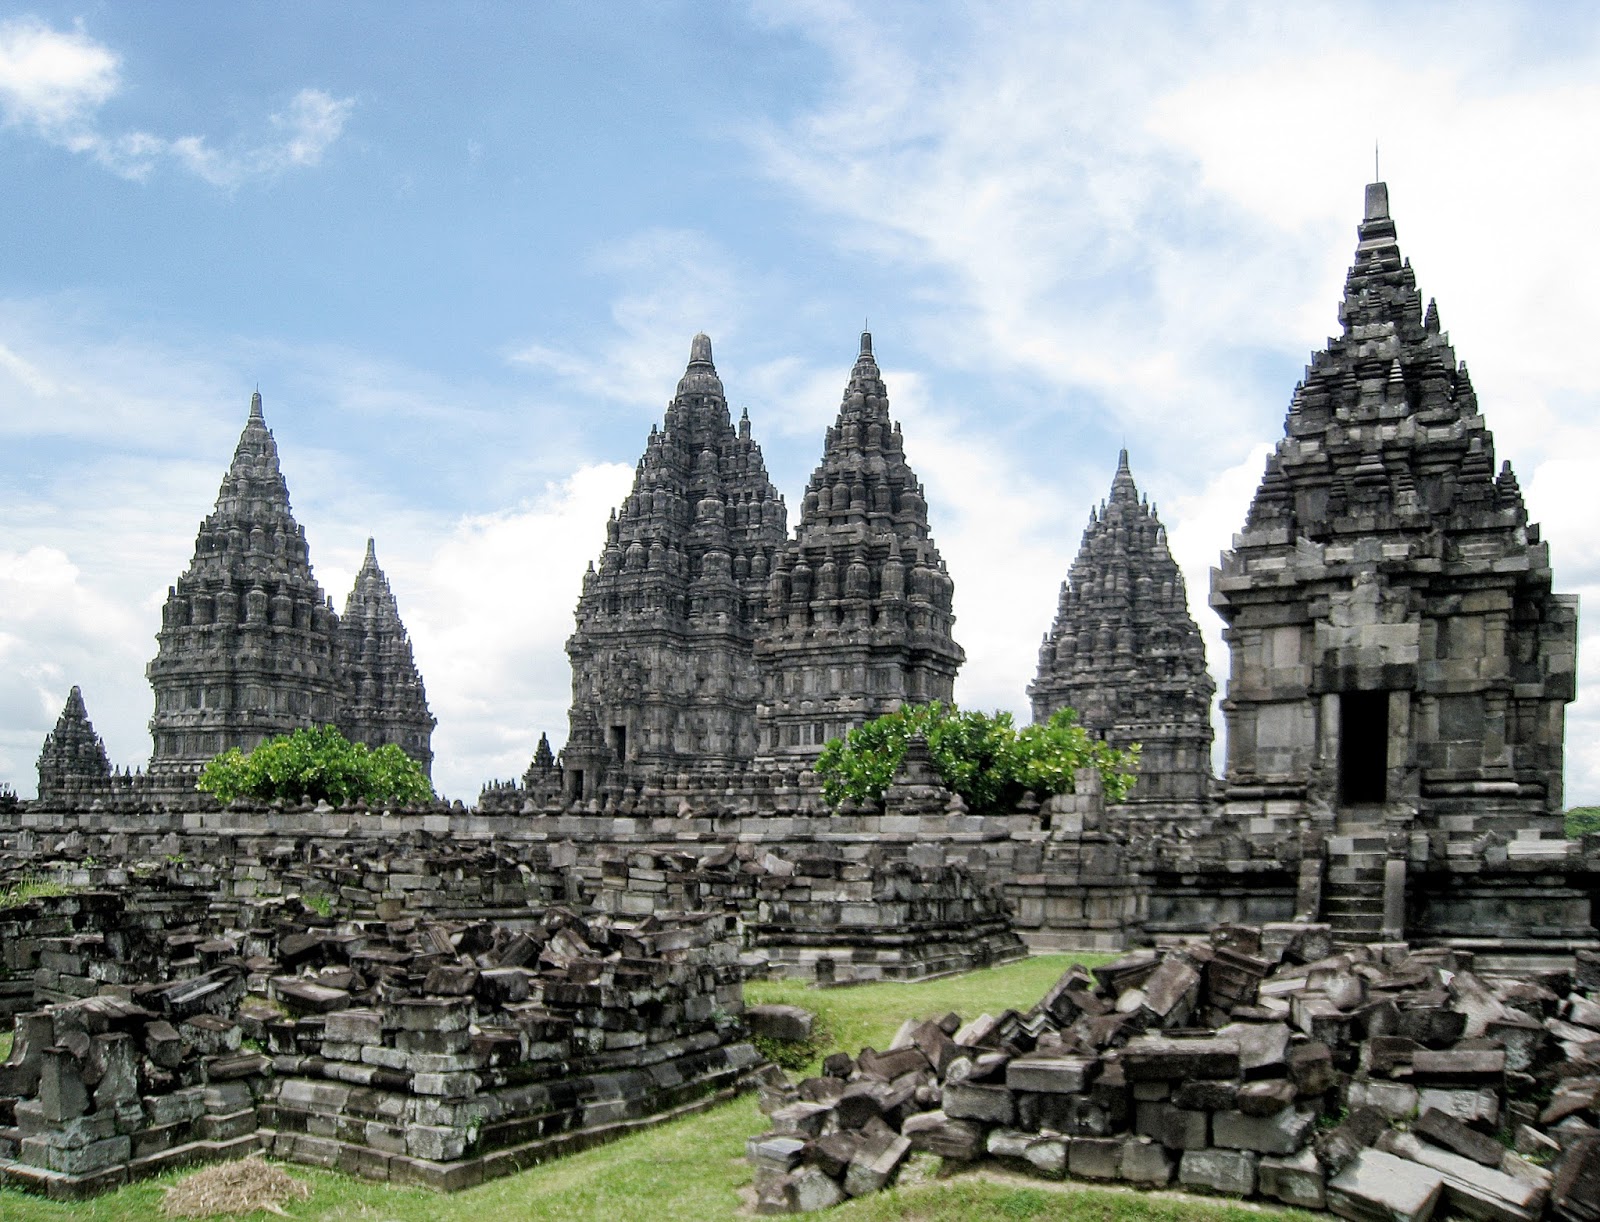 Proses Masuk dan Berkembangnya Hindu Budha di Indonesia